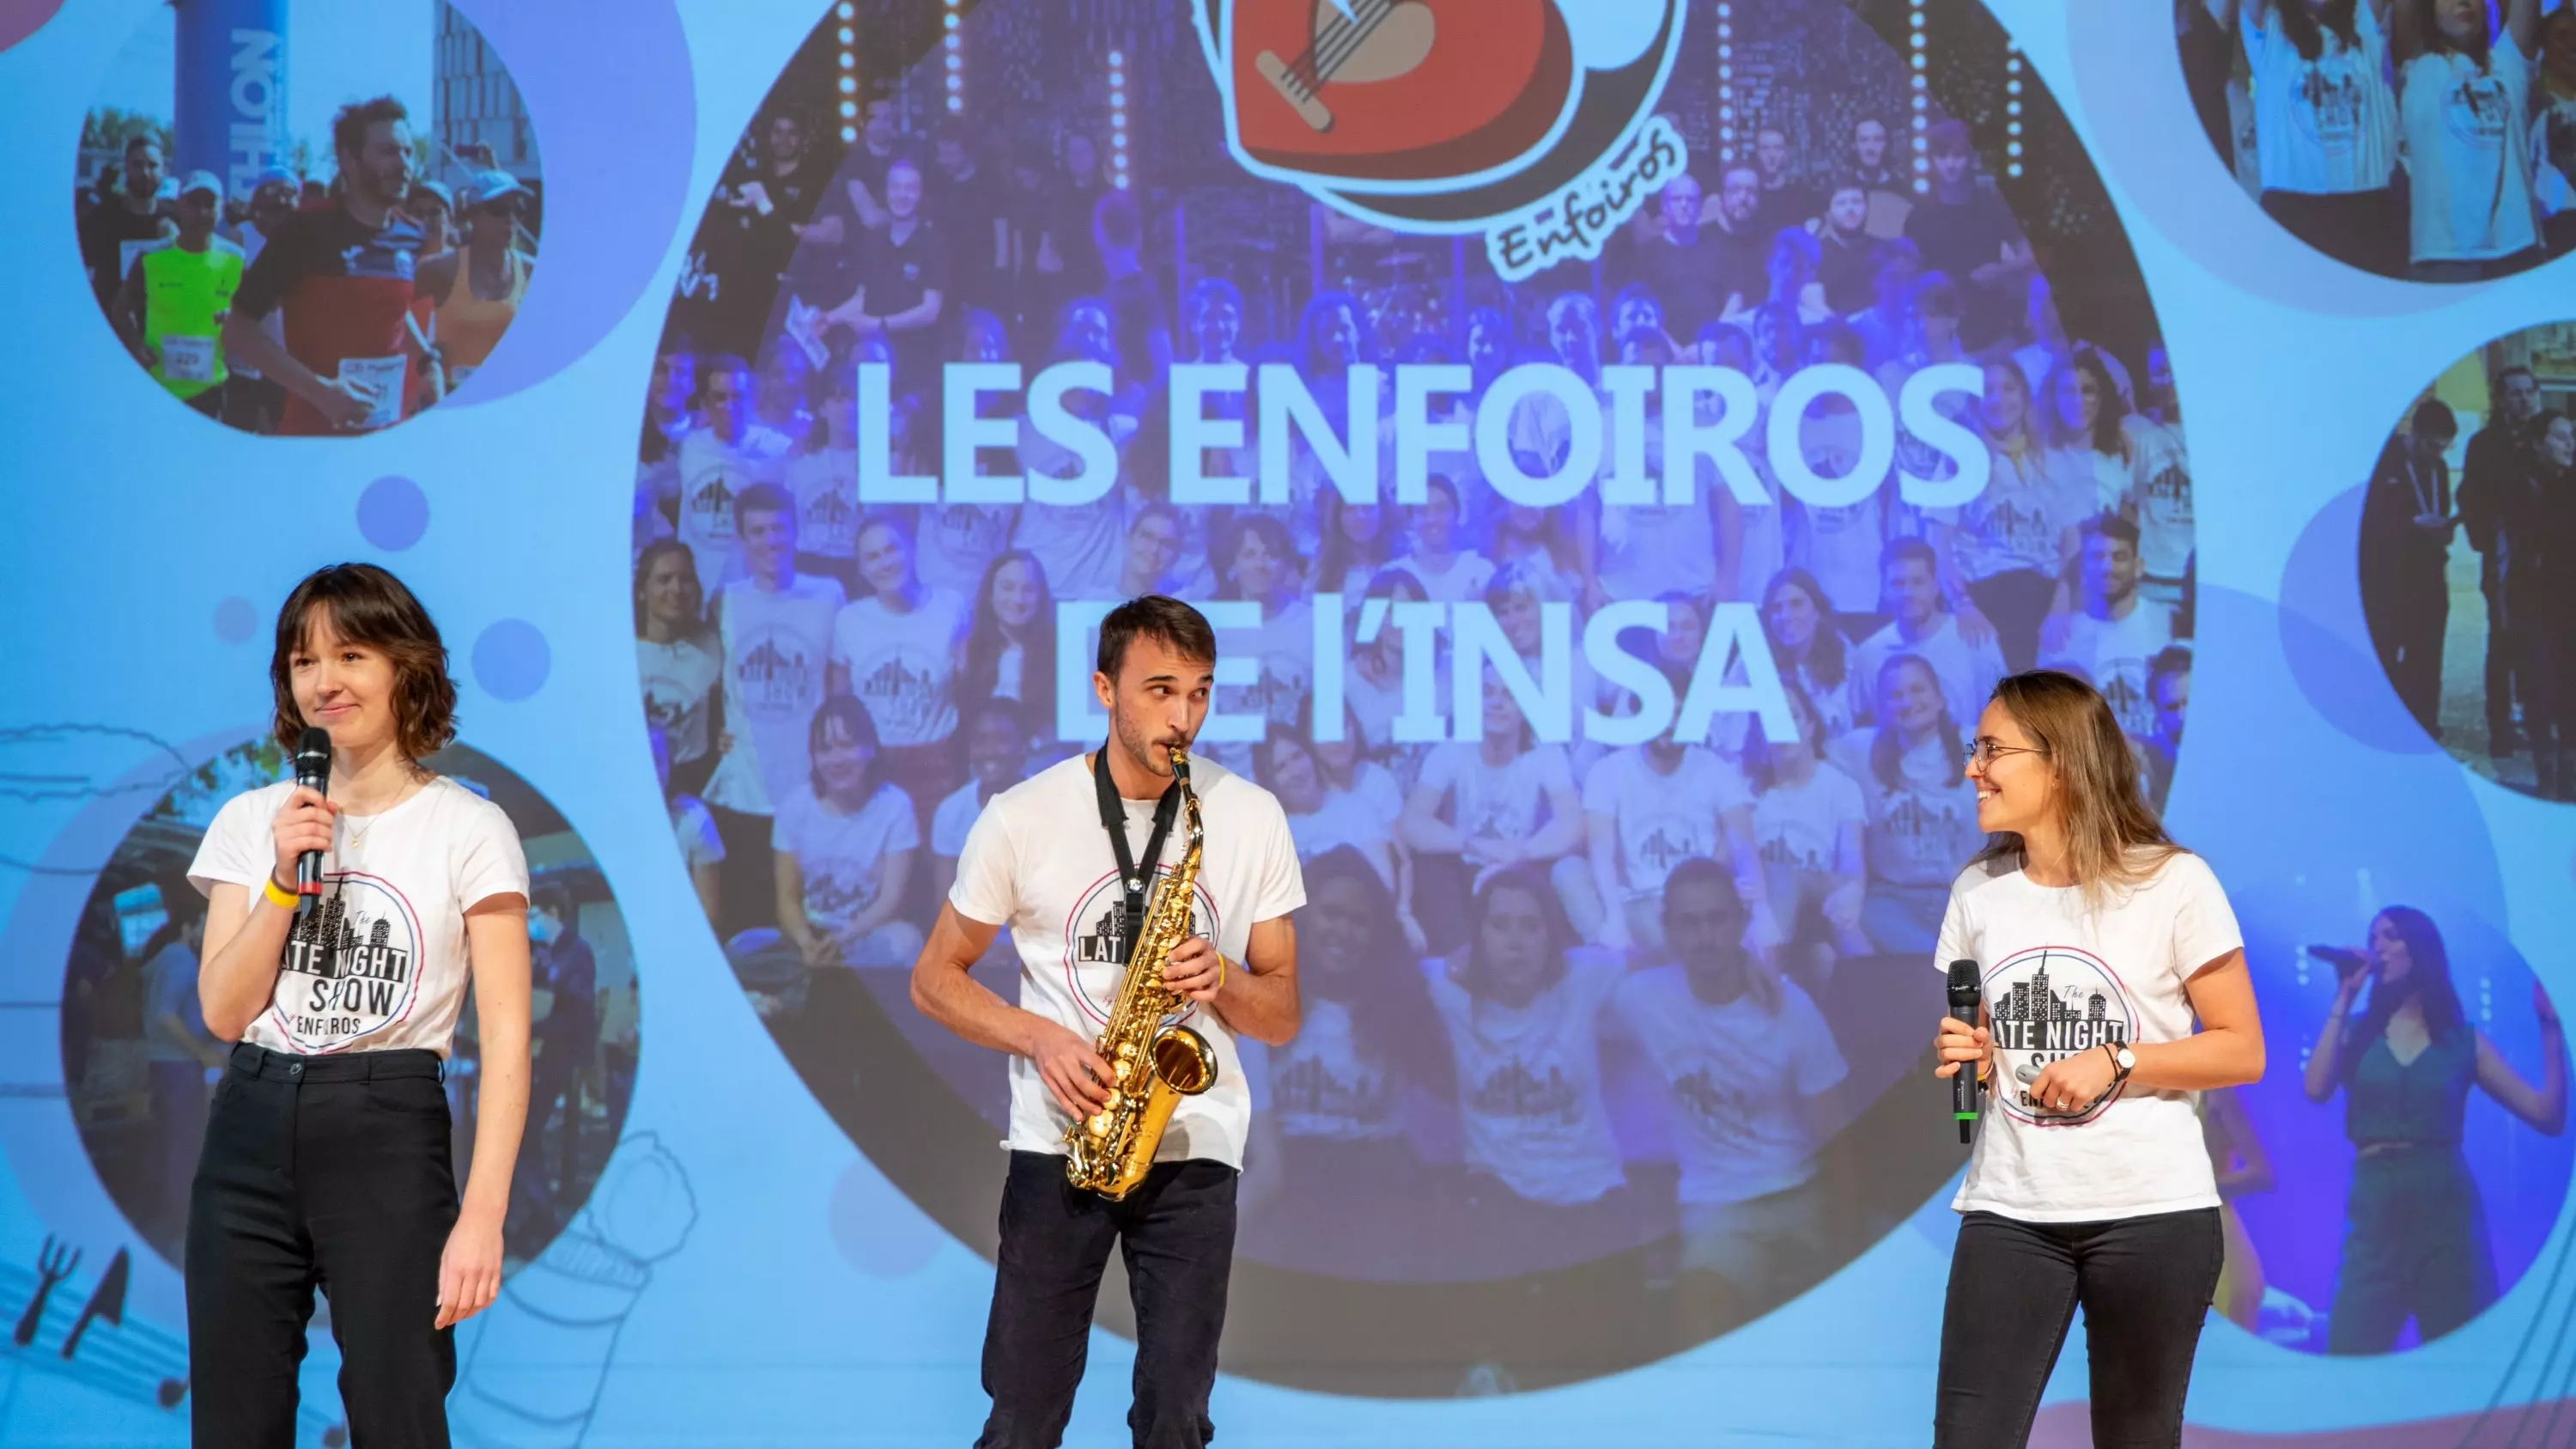 Association Les Enfoiros sur scène après leur 2nd place au concours.